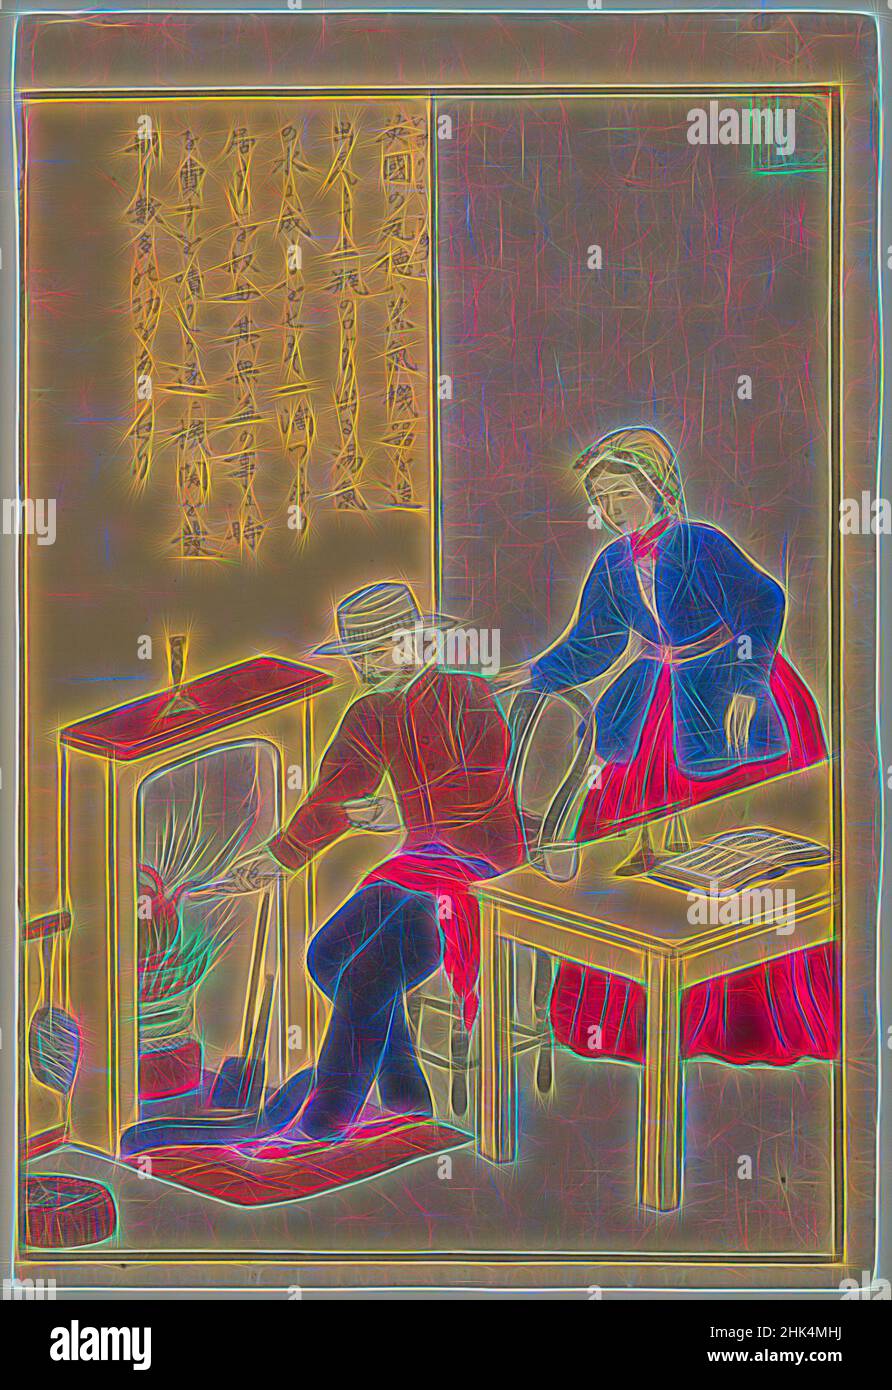 Inspiriert von James Watt, aus der Serie Lives of Great People of the Okzident, aus der Serie: Samuel Smiles' 'Self Help', Farbholzschnitt auf Papier, Japan, ca. 1870, Meiji-Periode, 14 1/4 x 9 1/2 Zoll, 36,2 x 24,1 cm, neu erfunden von Artotop. Klassische Kunst neu erfunden mit einem modernen Twist. Design von warmen fröhlichen Leuchten der Helligkeit und Lichtstrahl Strahlkraft. Fotografie inspiriert von Surrealismus und Futurismus, umarmt dynamische Energie der modernen Technologie, Bewegung, Geschwindigkeit und Kultur zu revolutionieren Stockfoto